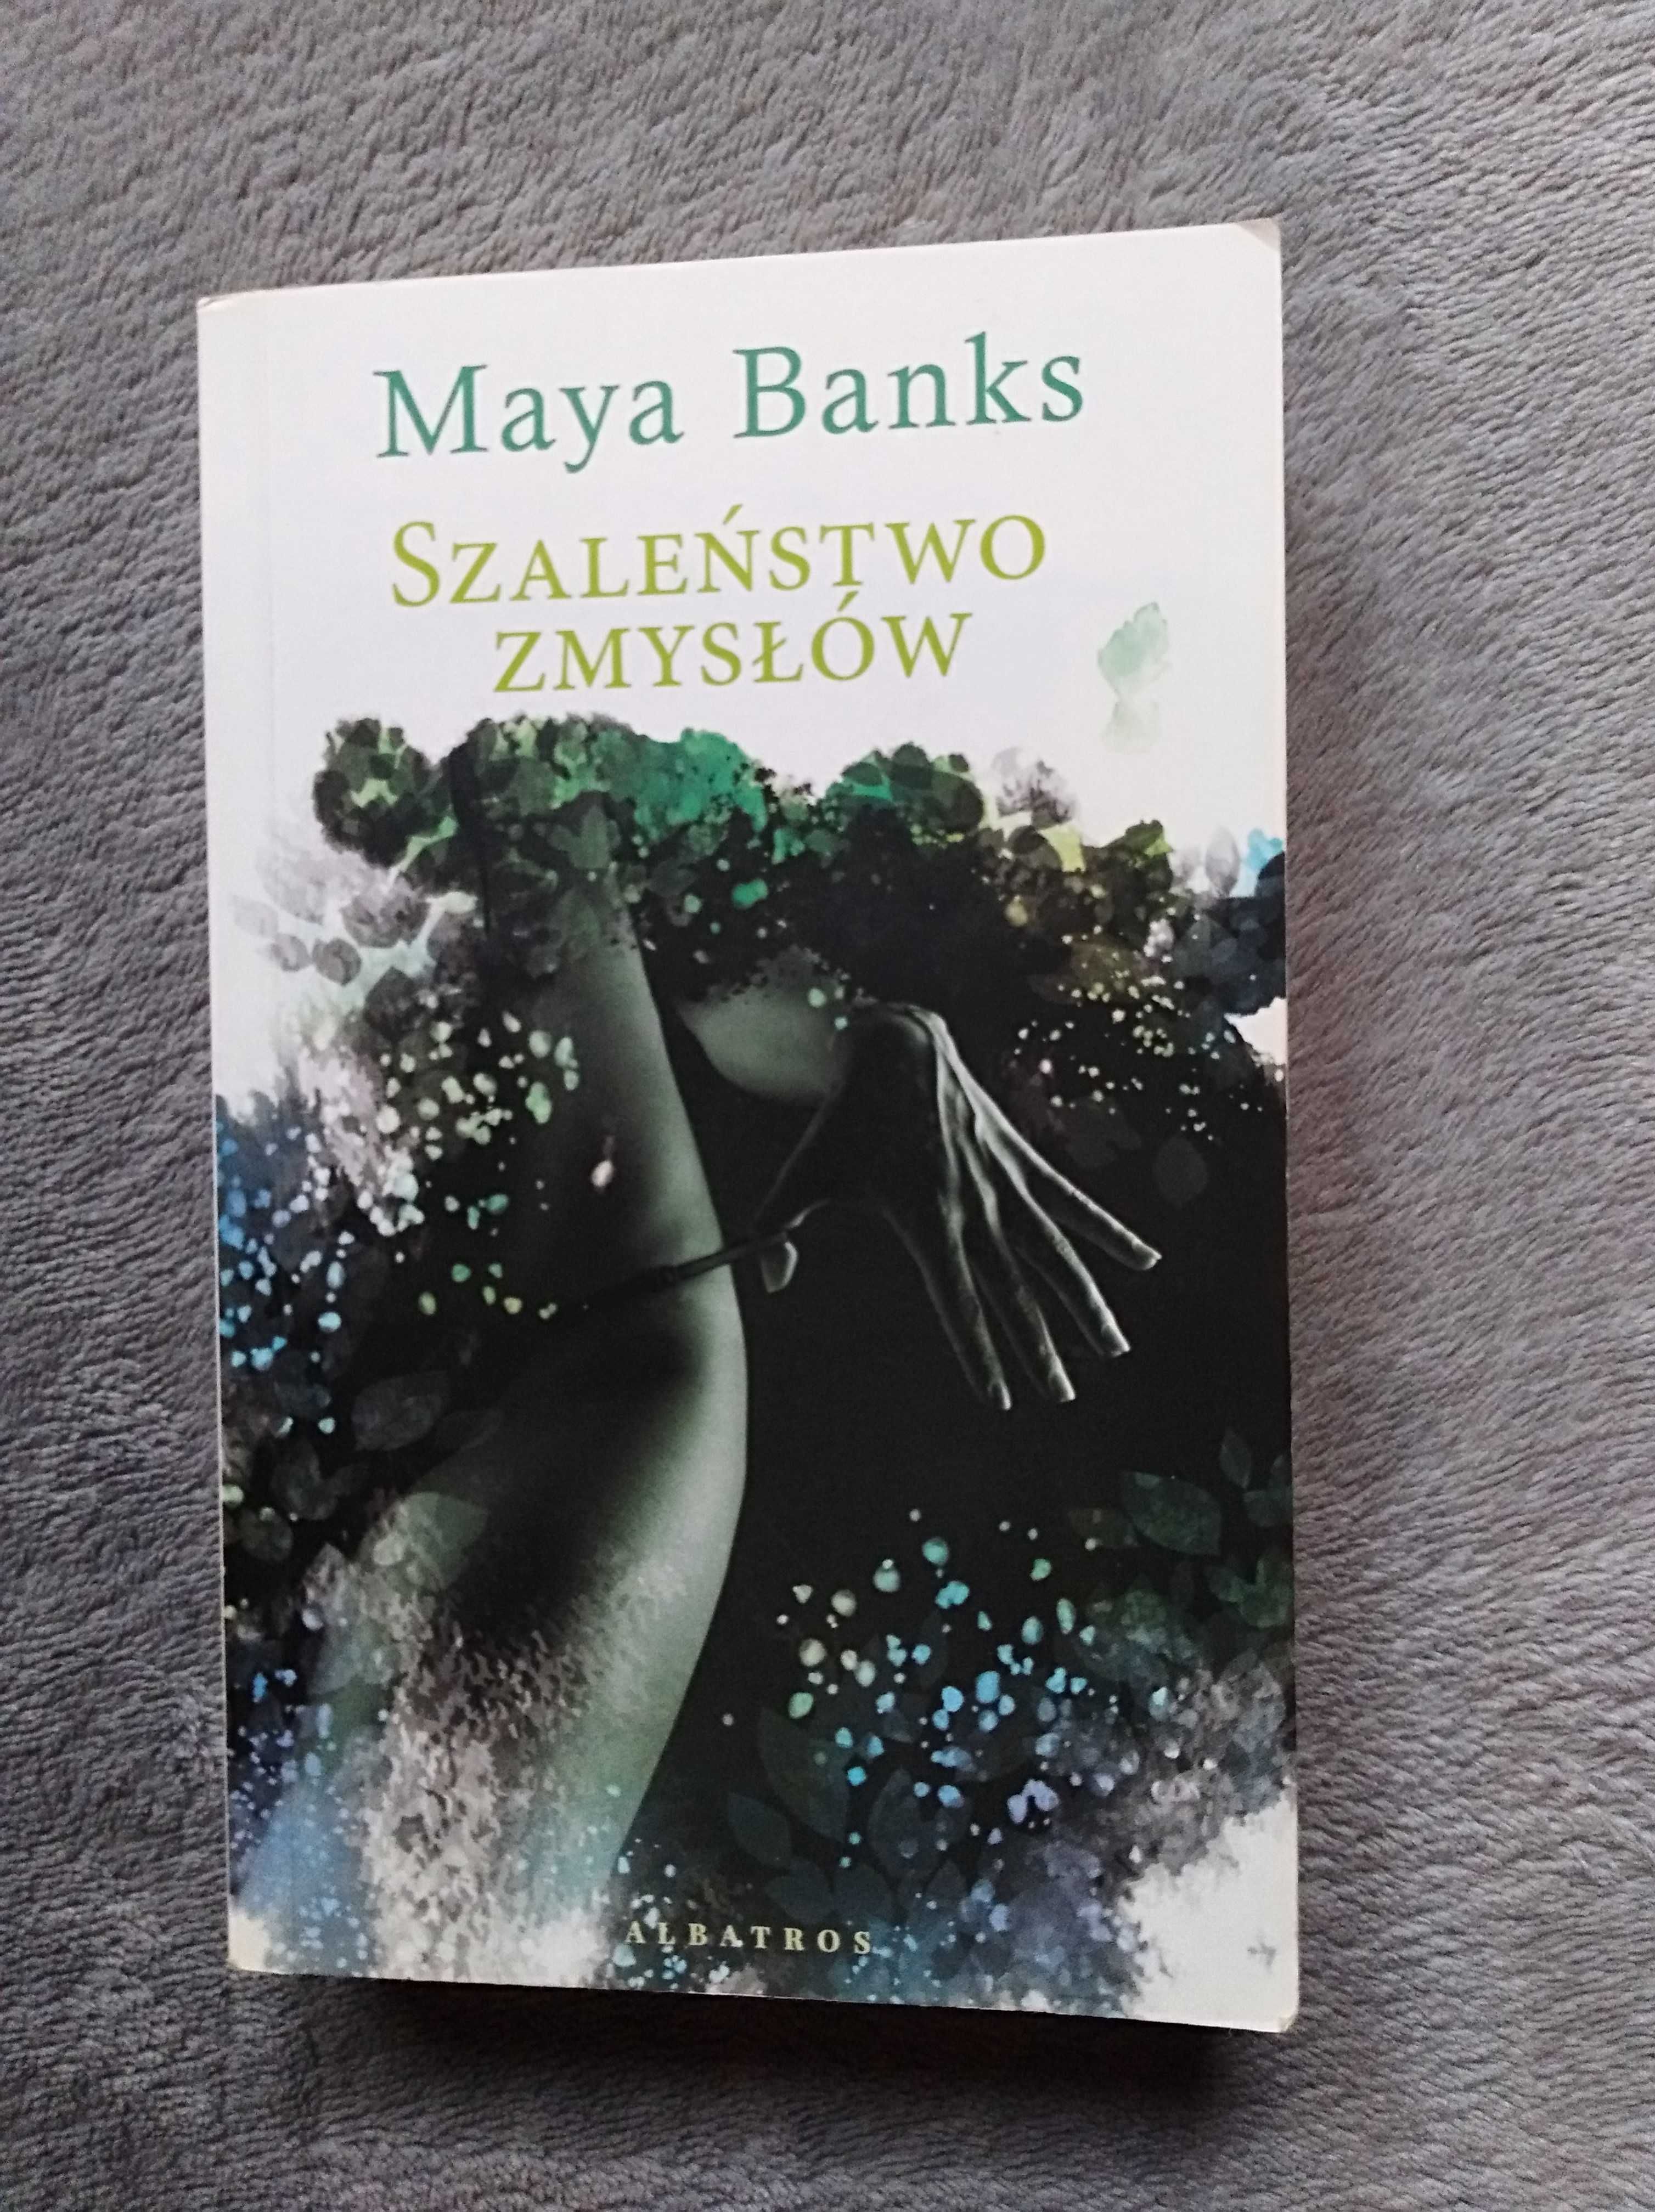 Maya Banks "Szaleństwo zmysłów" wydanie kieszonkowe